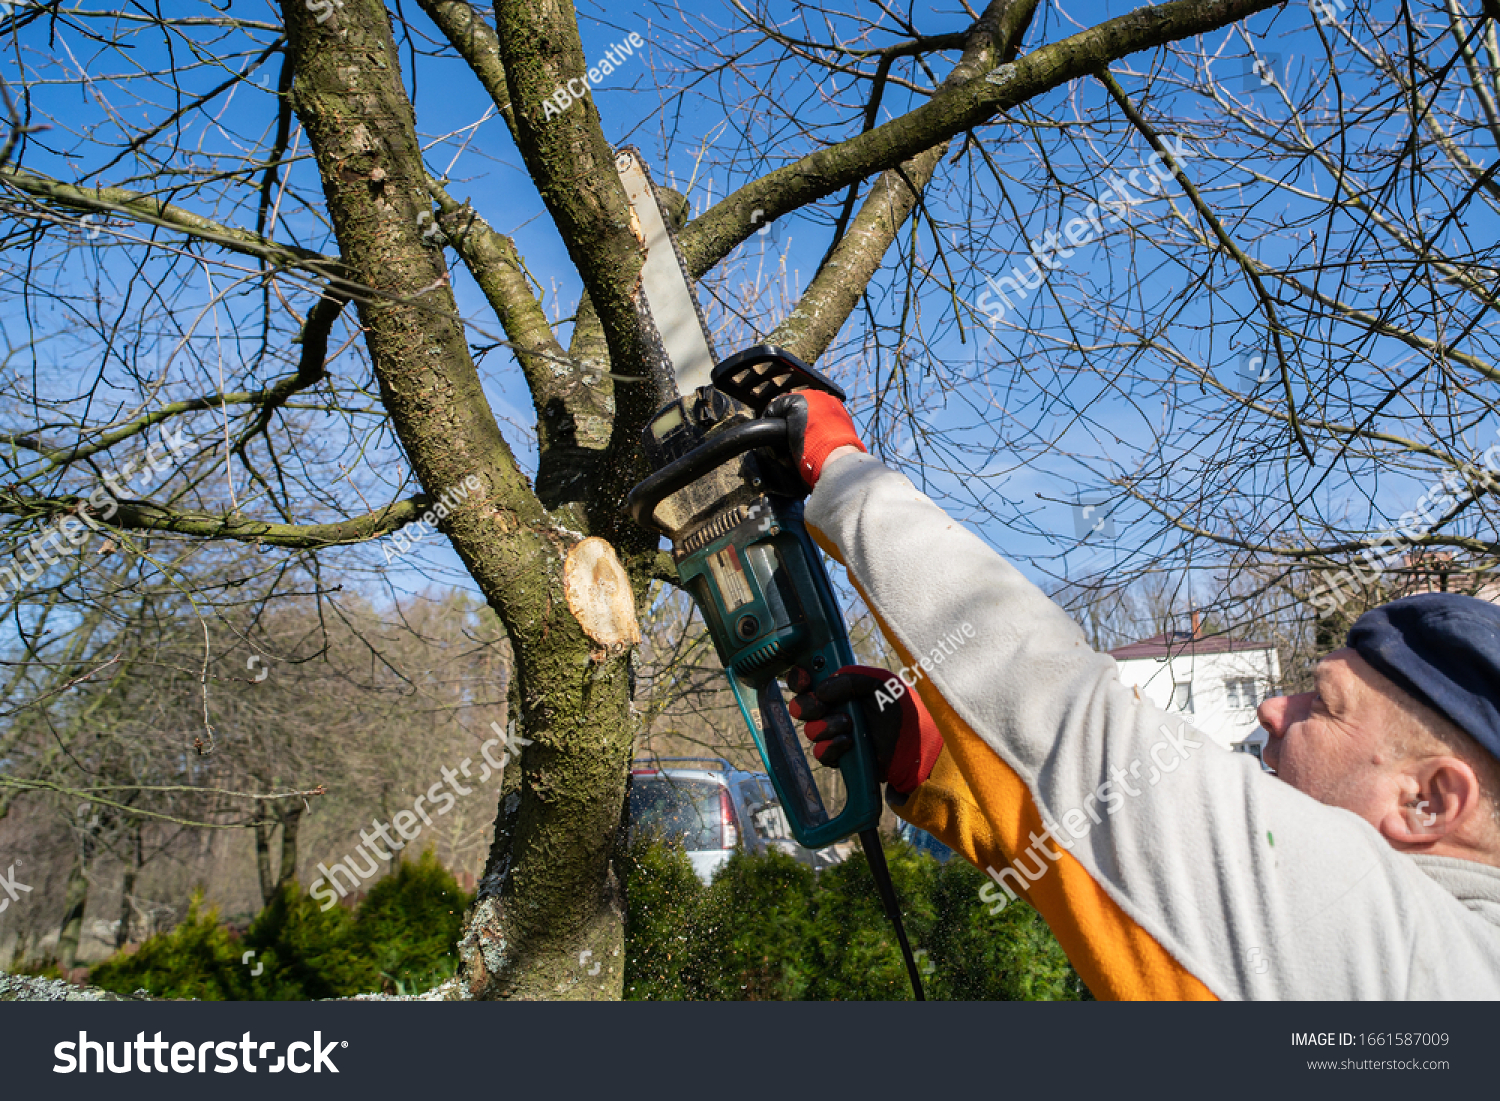 Садовый инструмент для обрезки деревьев